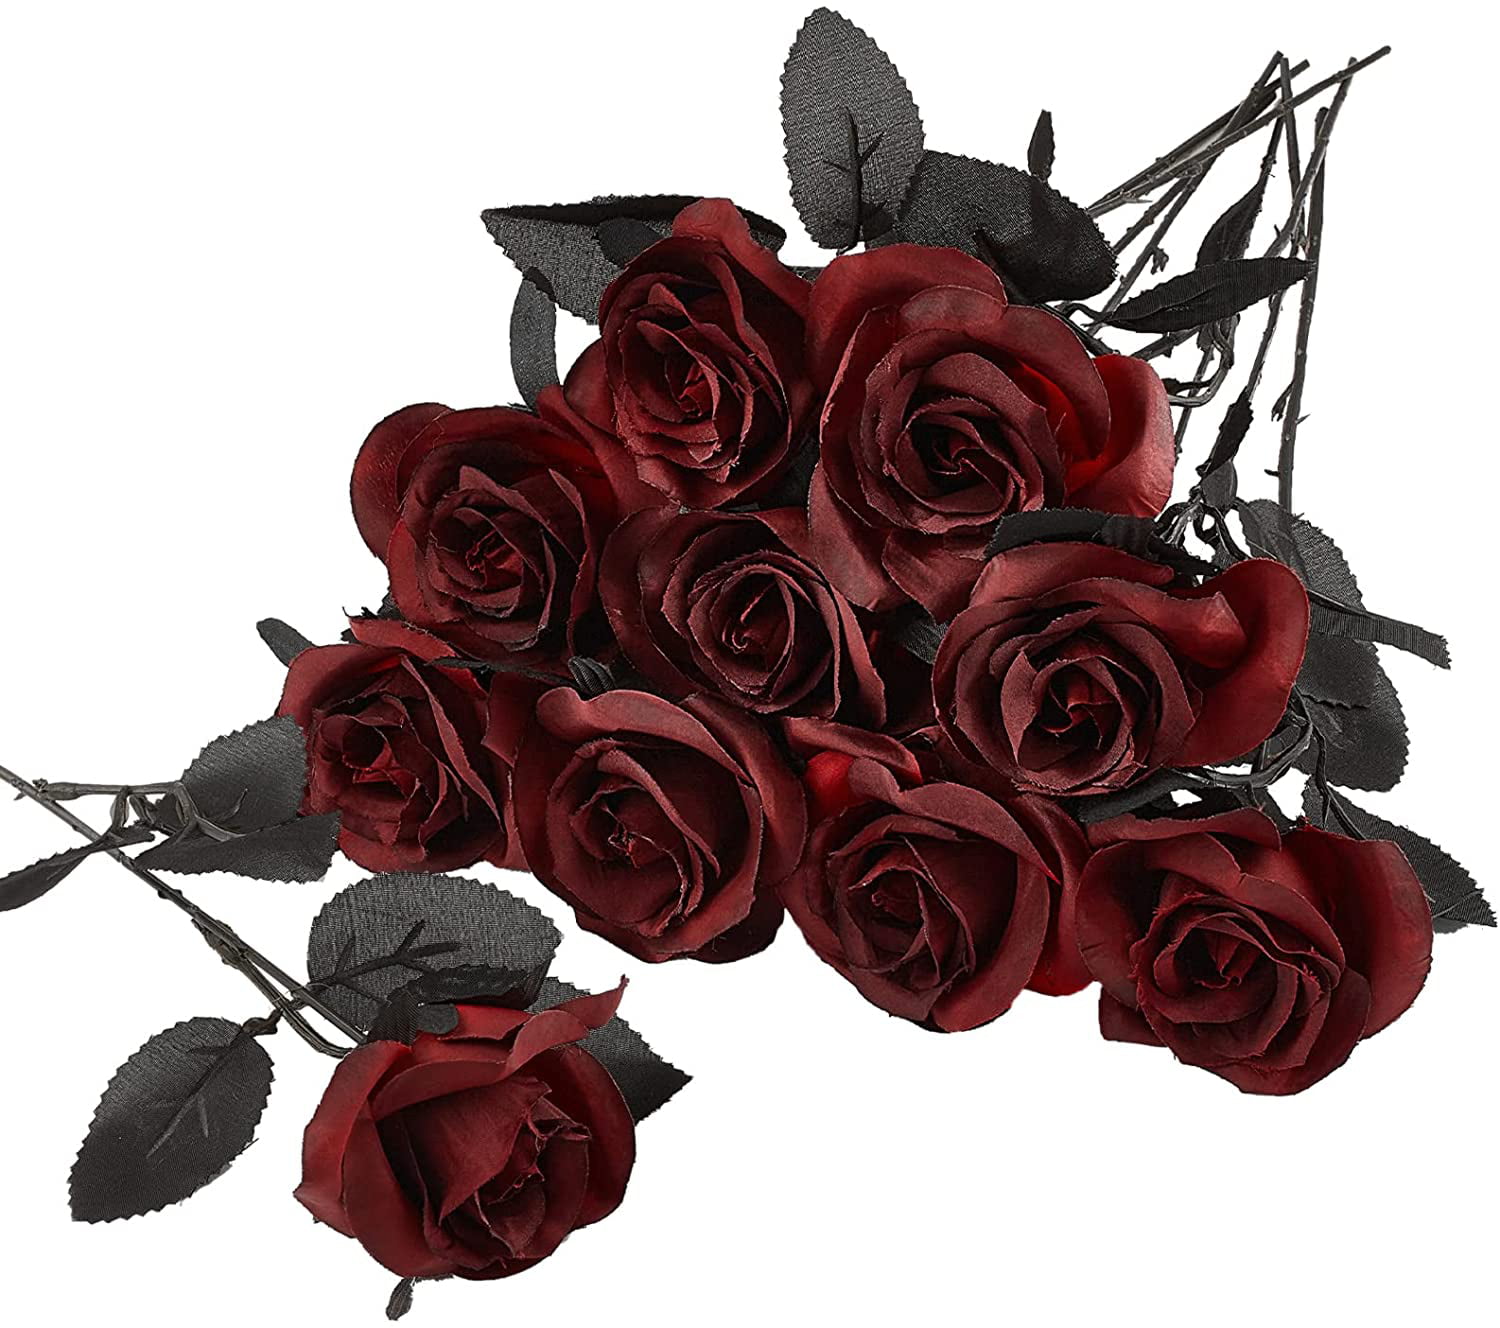 DuHouse 10pcs Fake Black Roses Artificial Silk Flowers Faux Rose Flower Long Stems Bouquet for Arrangement Wedding Centerpiece Party Home Kitchen